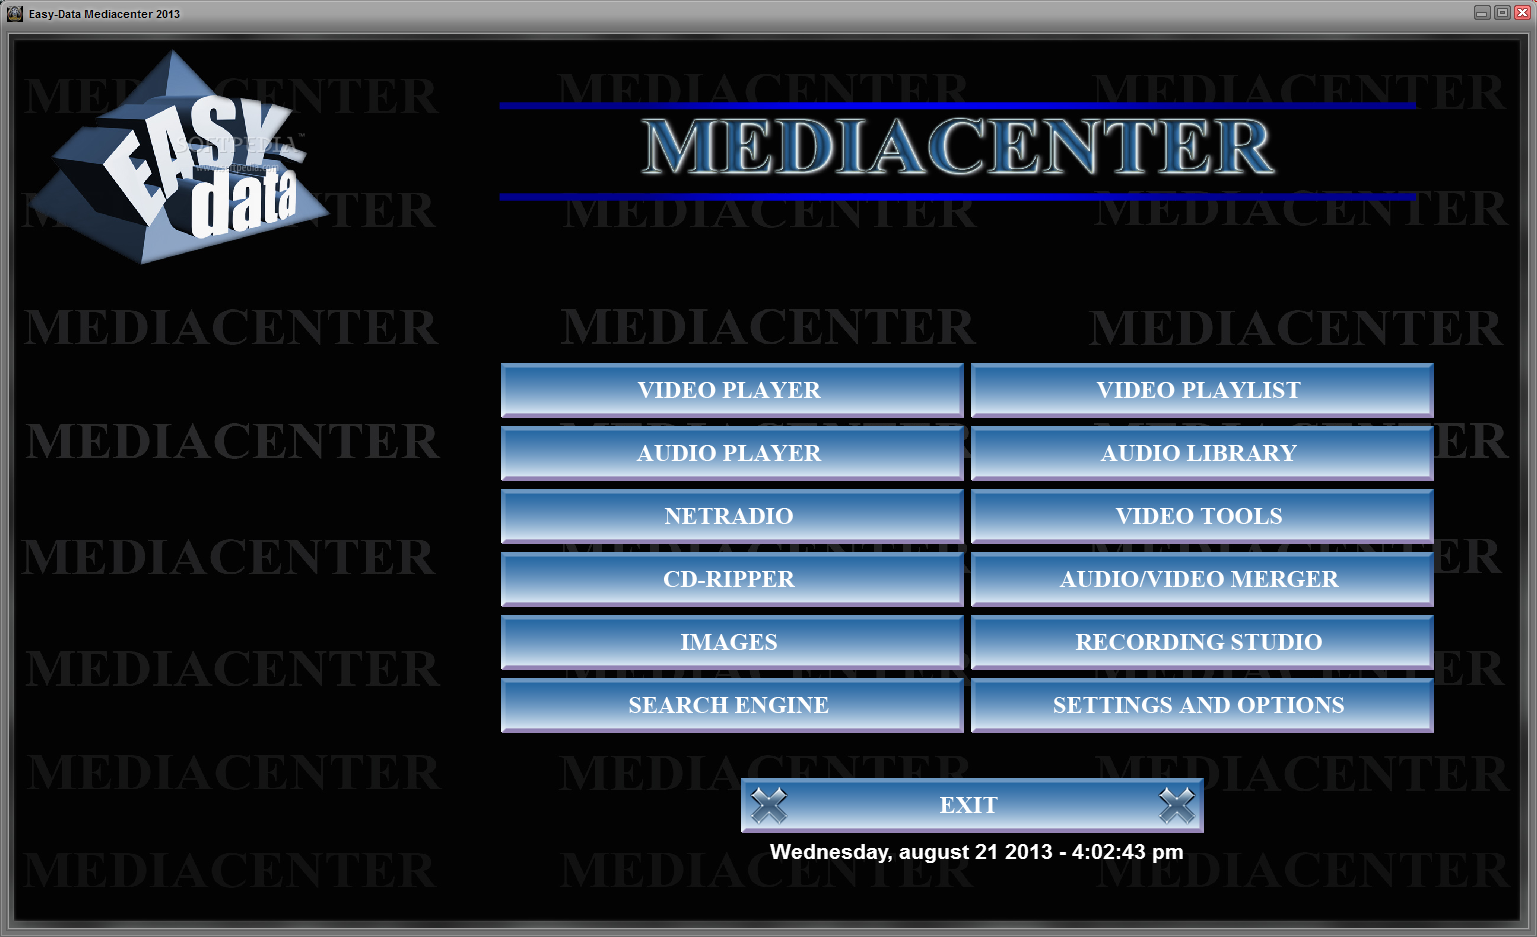 Easy-Data Mediacenter 2013 (formerly Easy-Data Mediaplayer)